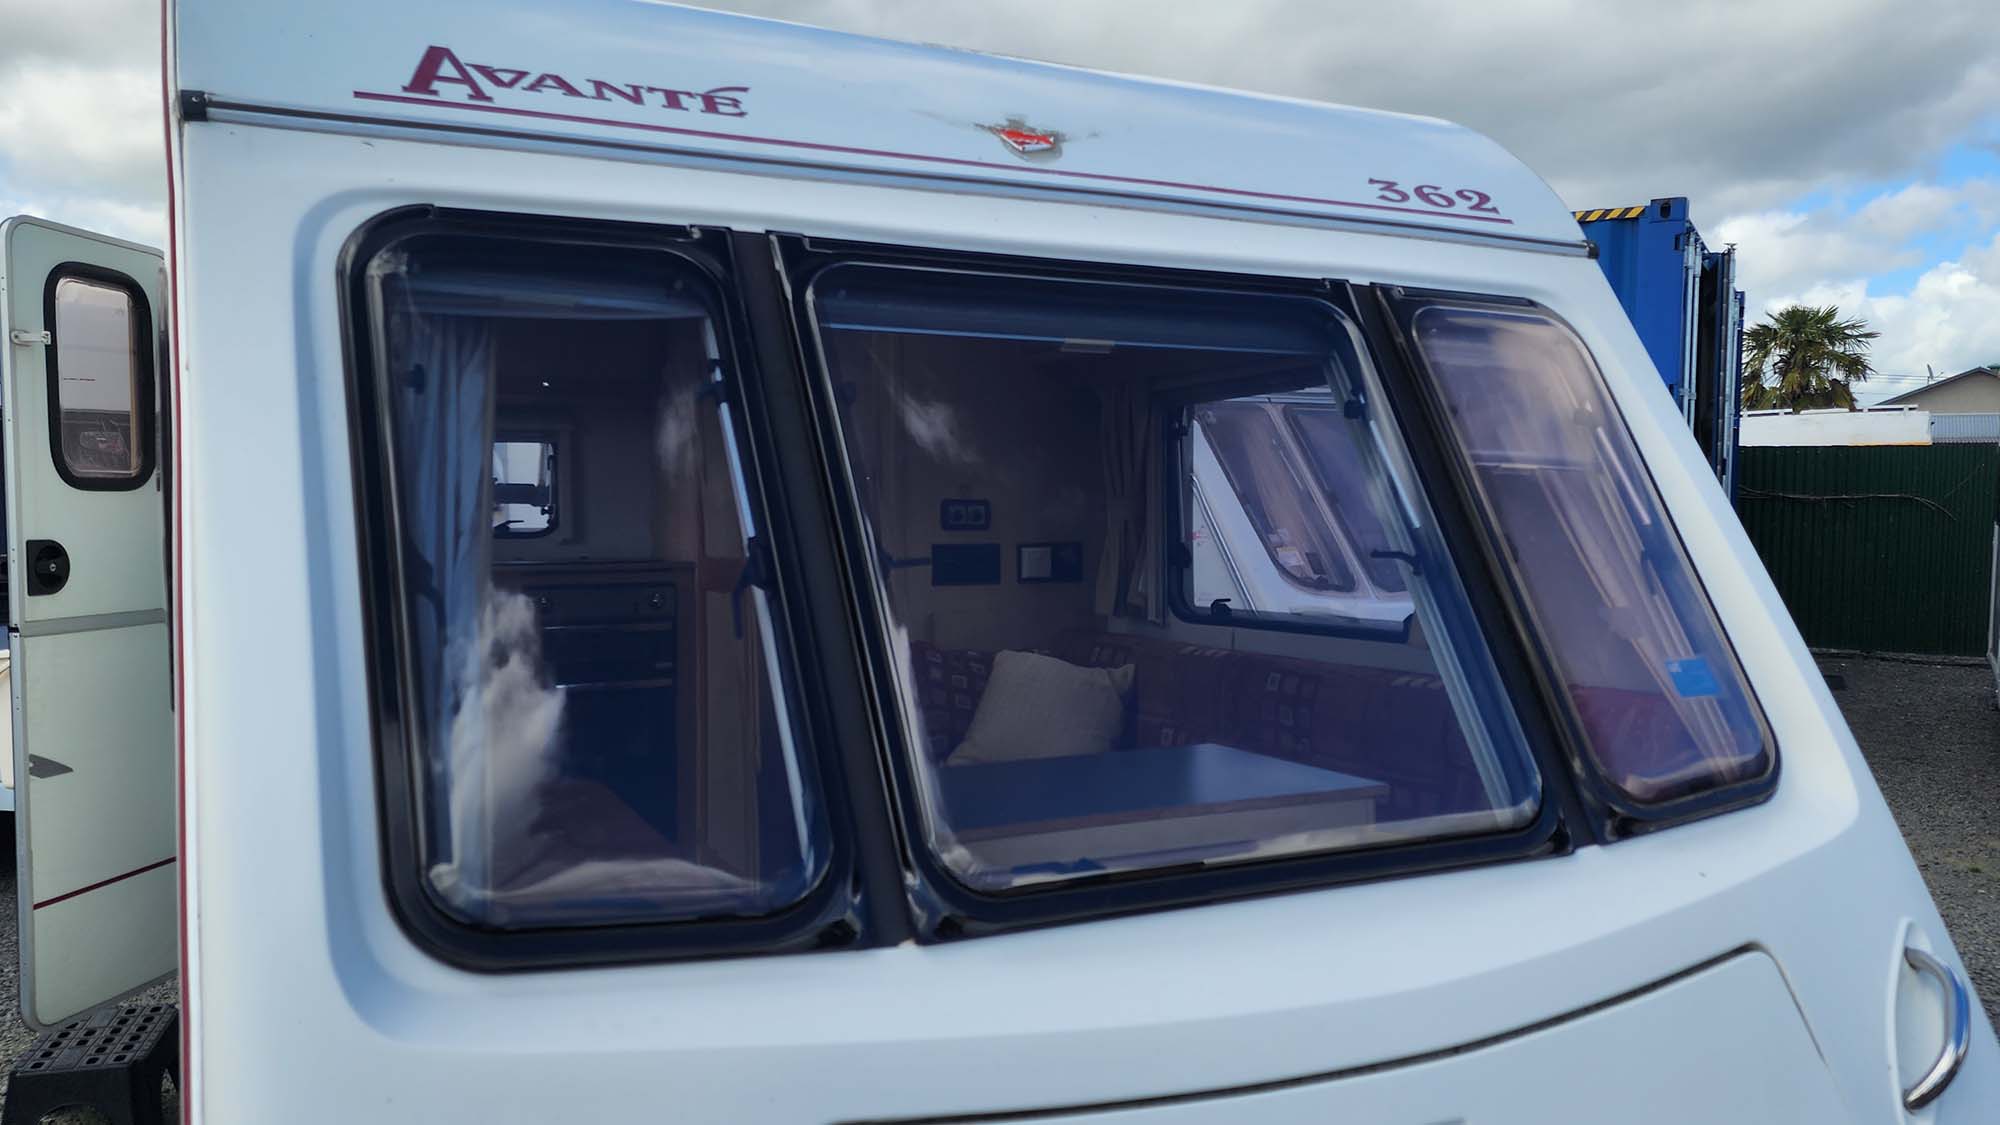 Avante caravan with new window replaced by Smile Caravans 